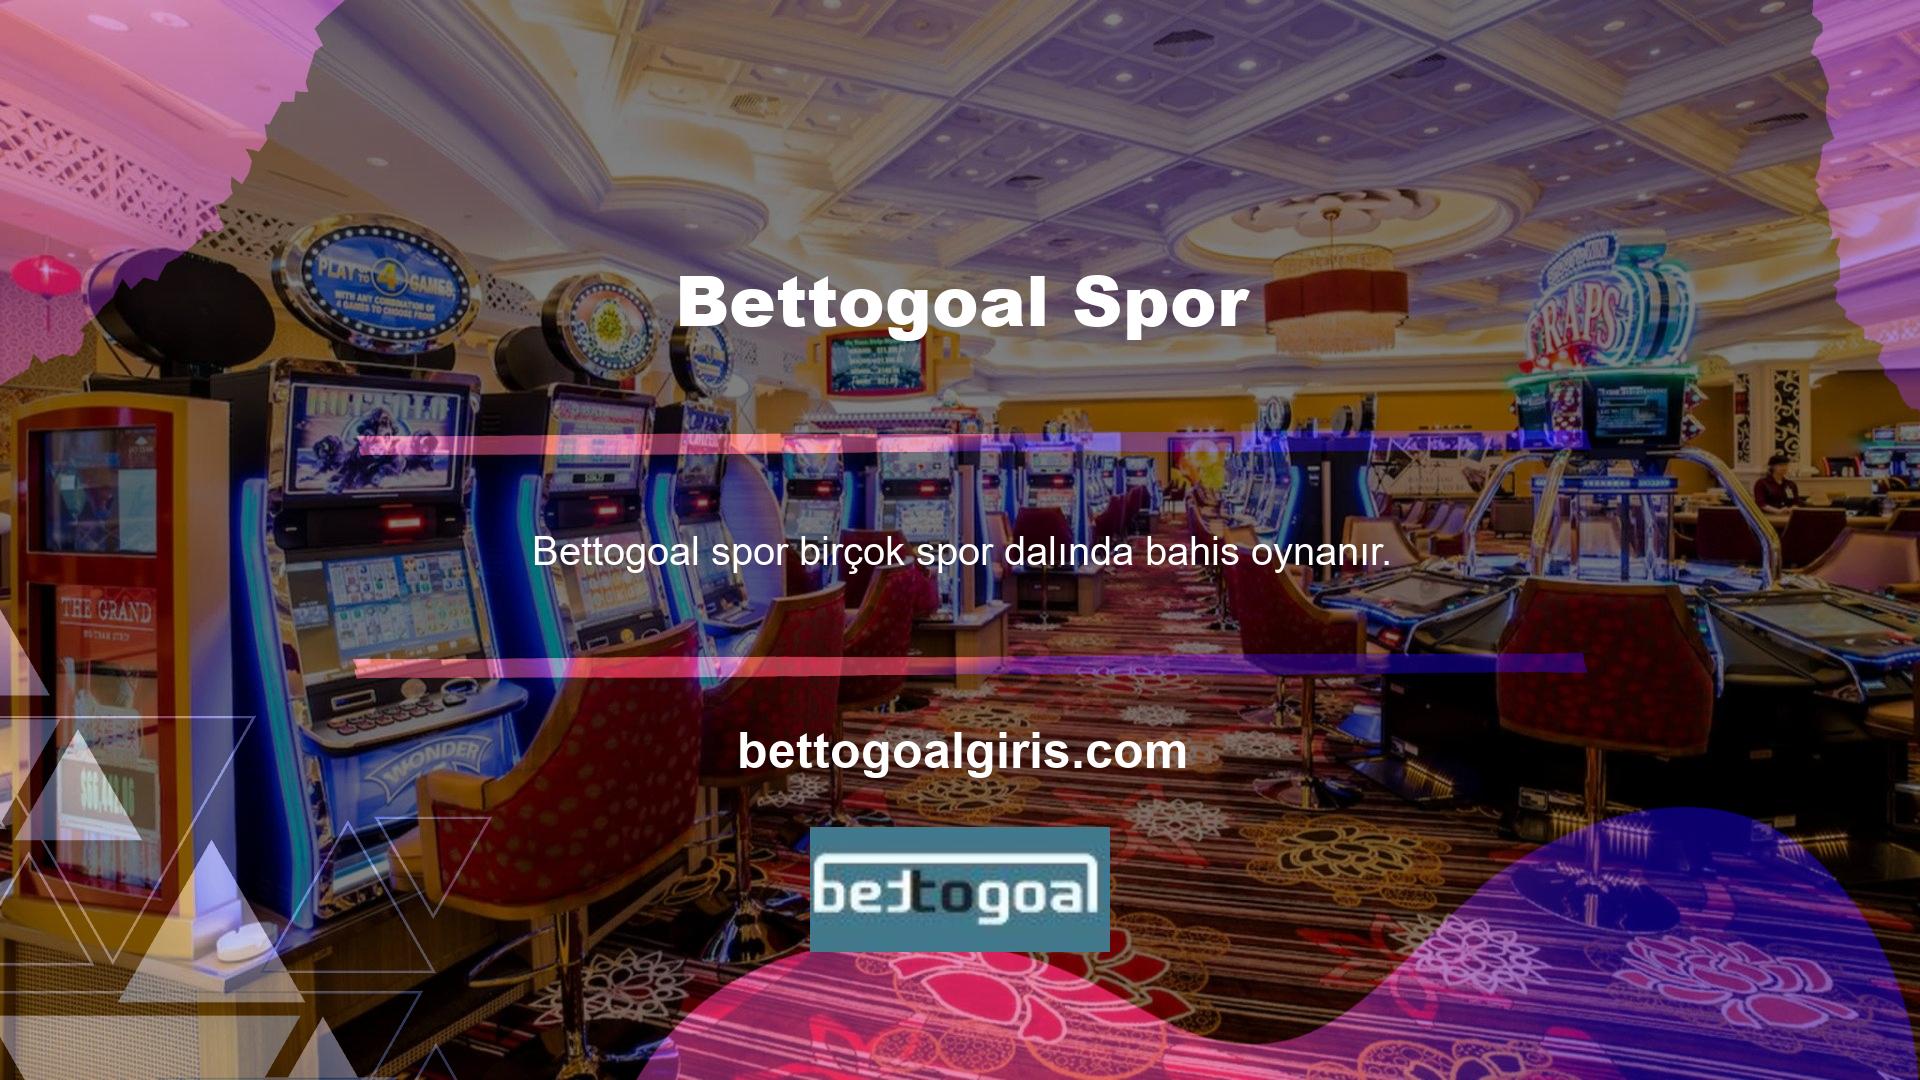 Bettogoal, gerçek kasiyerlerle casino oynayabileceğiniz canlı bir casino sunuyor